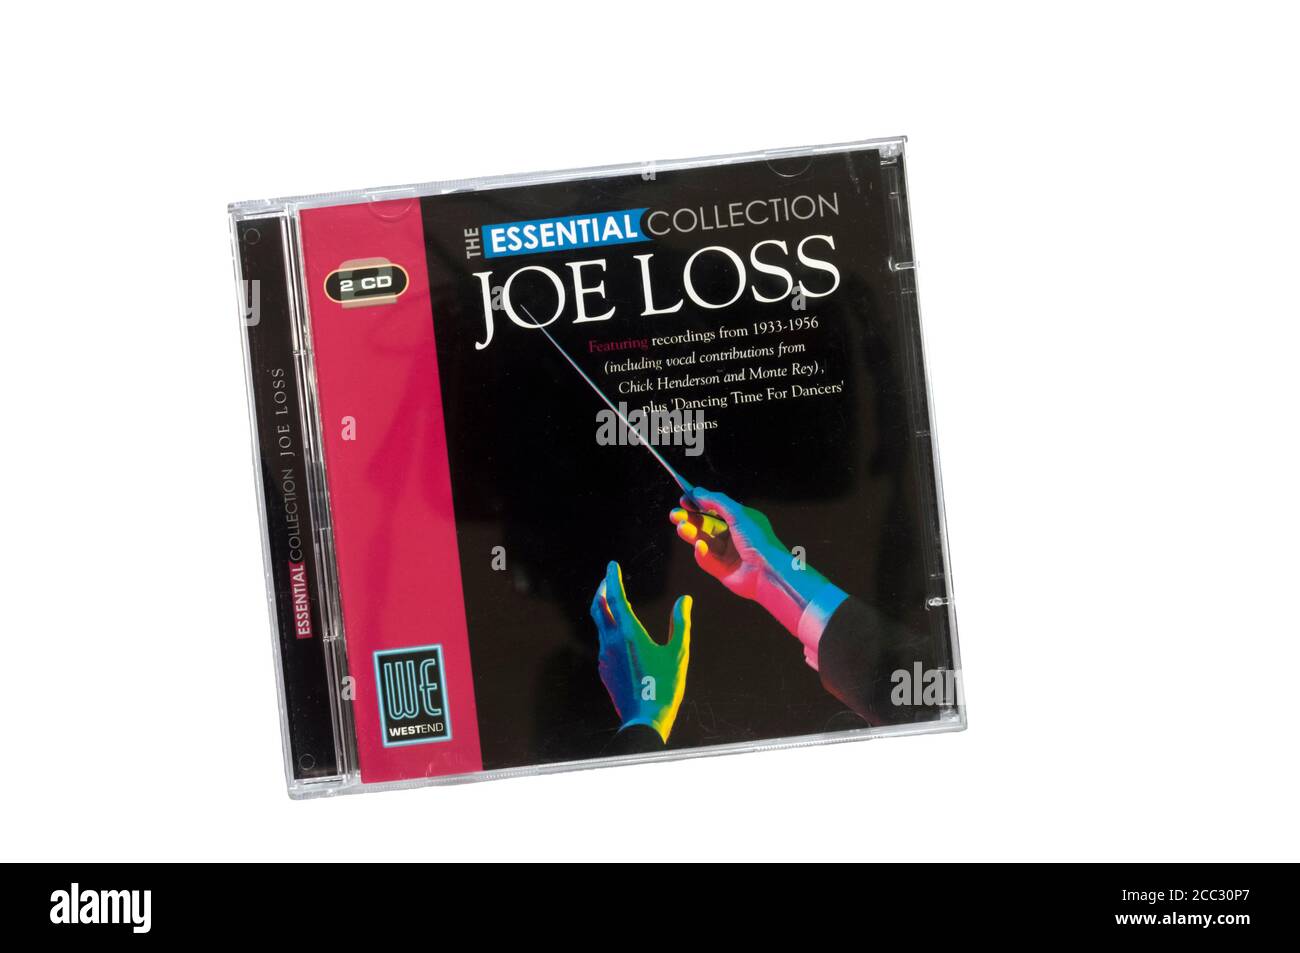 The Essential Collection Joe Loss fue lanzado en 2007 como una compilación doble de CD. Foto de stock